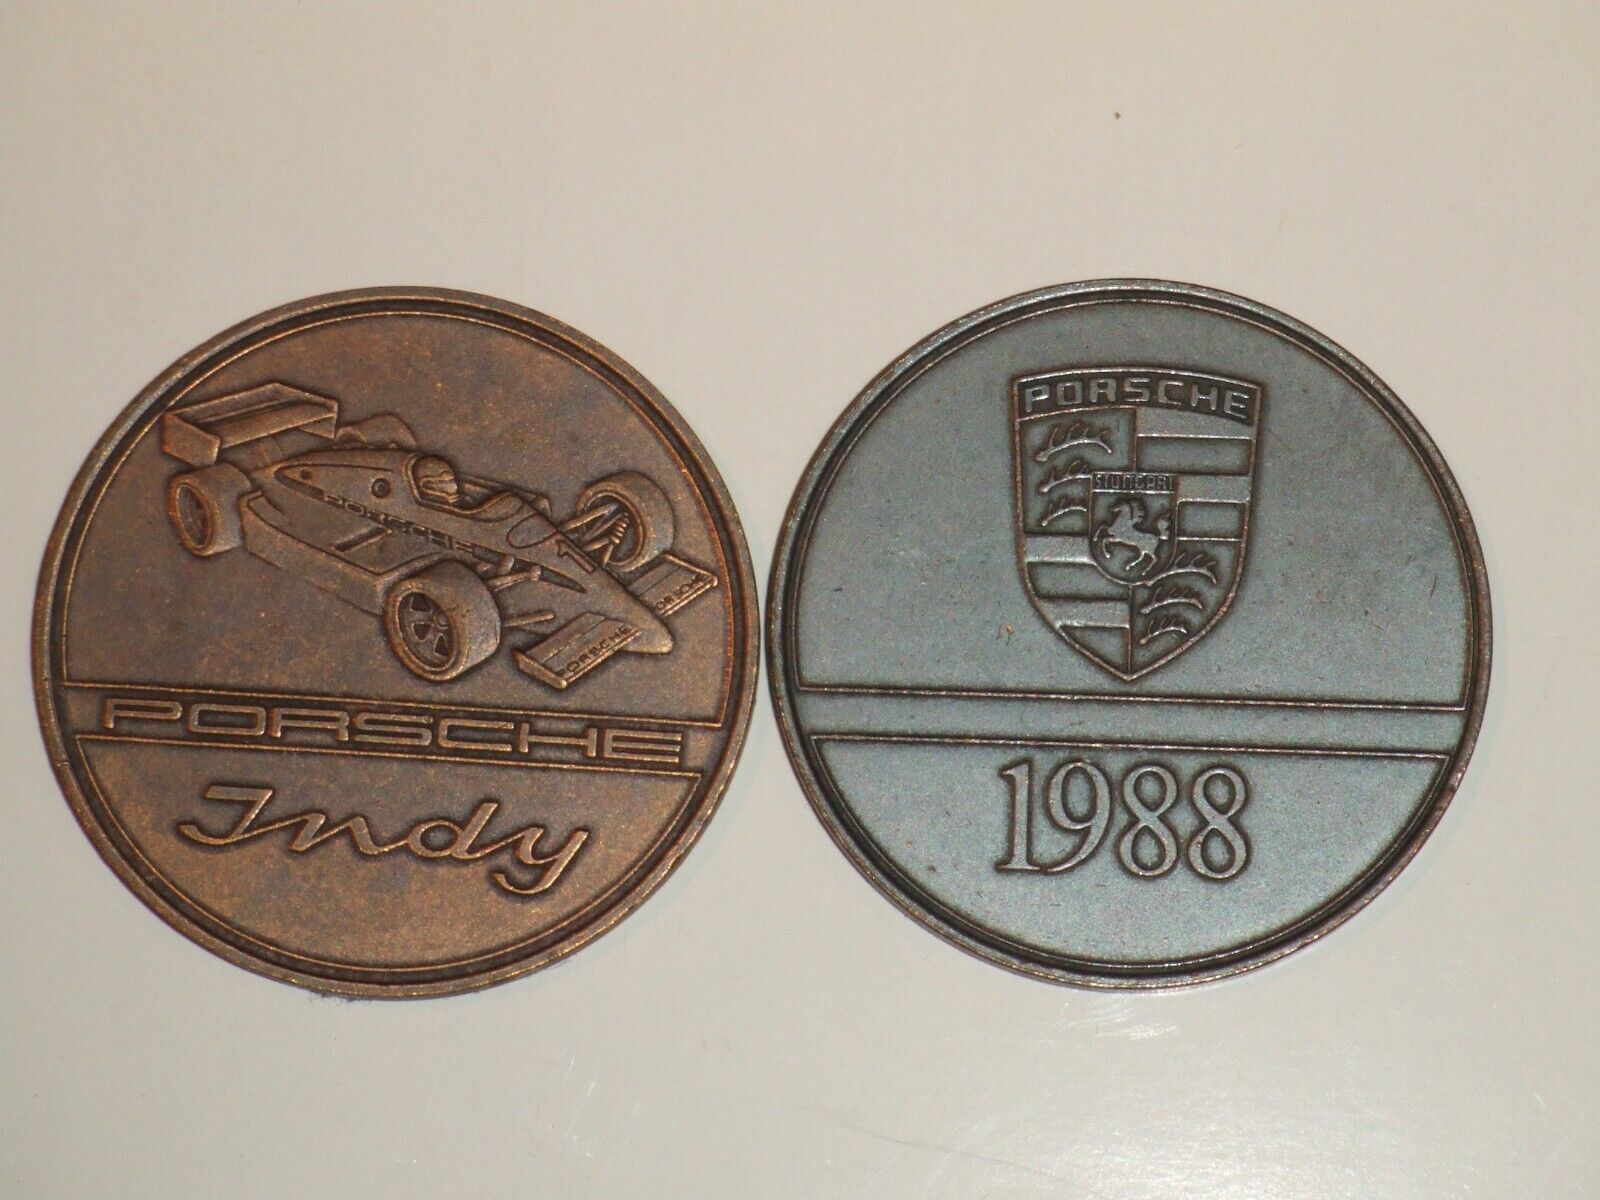 1988 Porsche Christophorus Calendar Coin Münze \